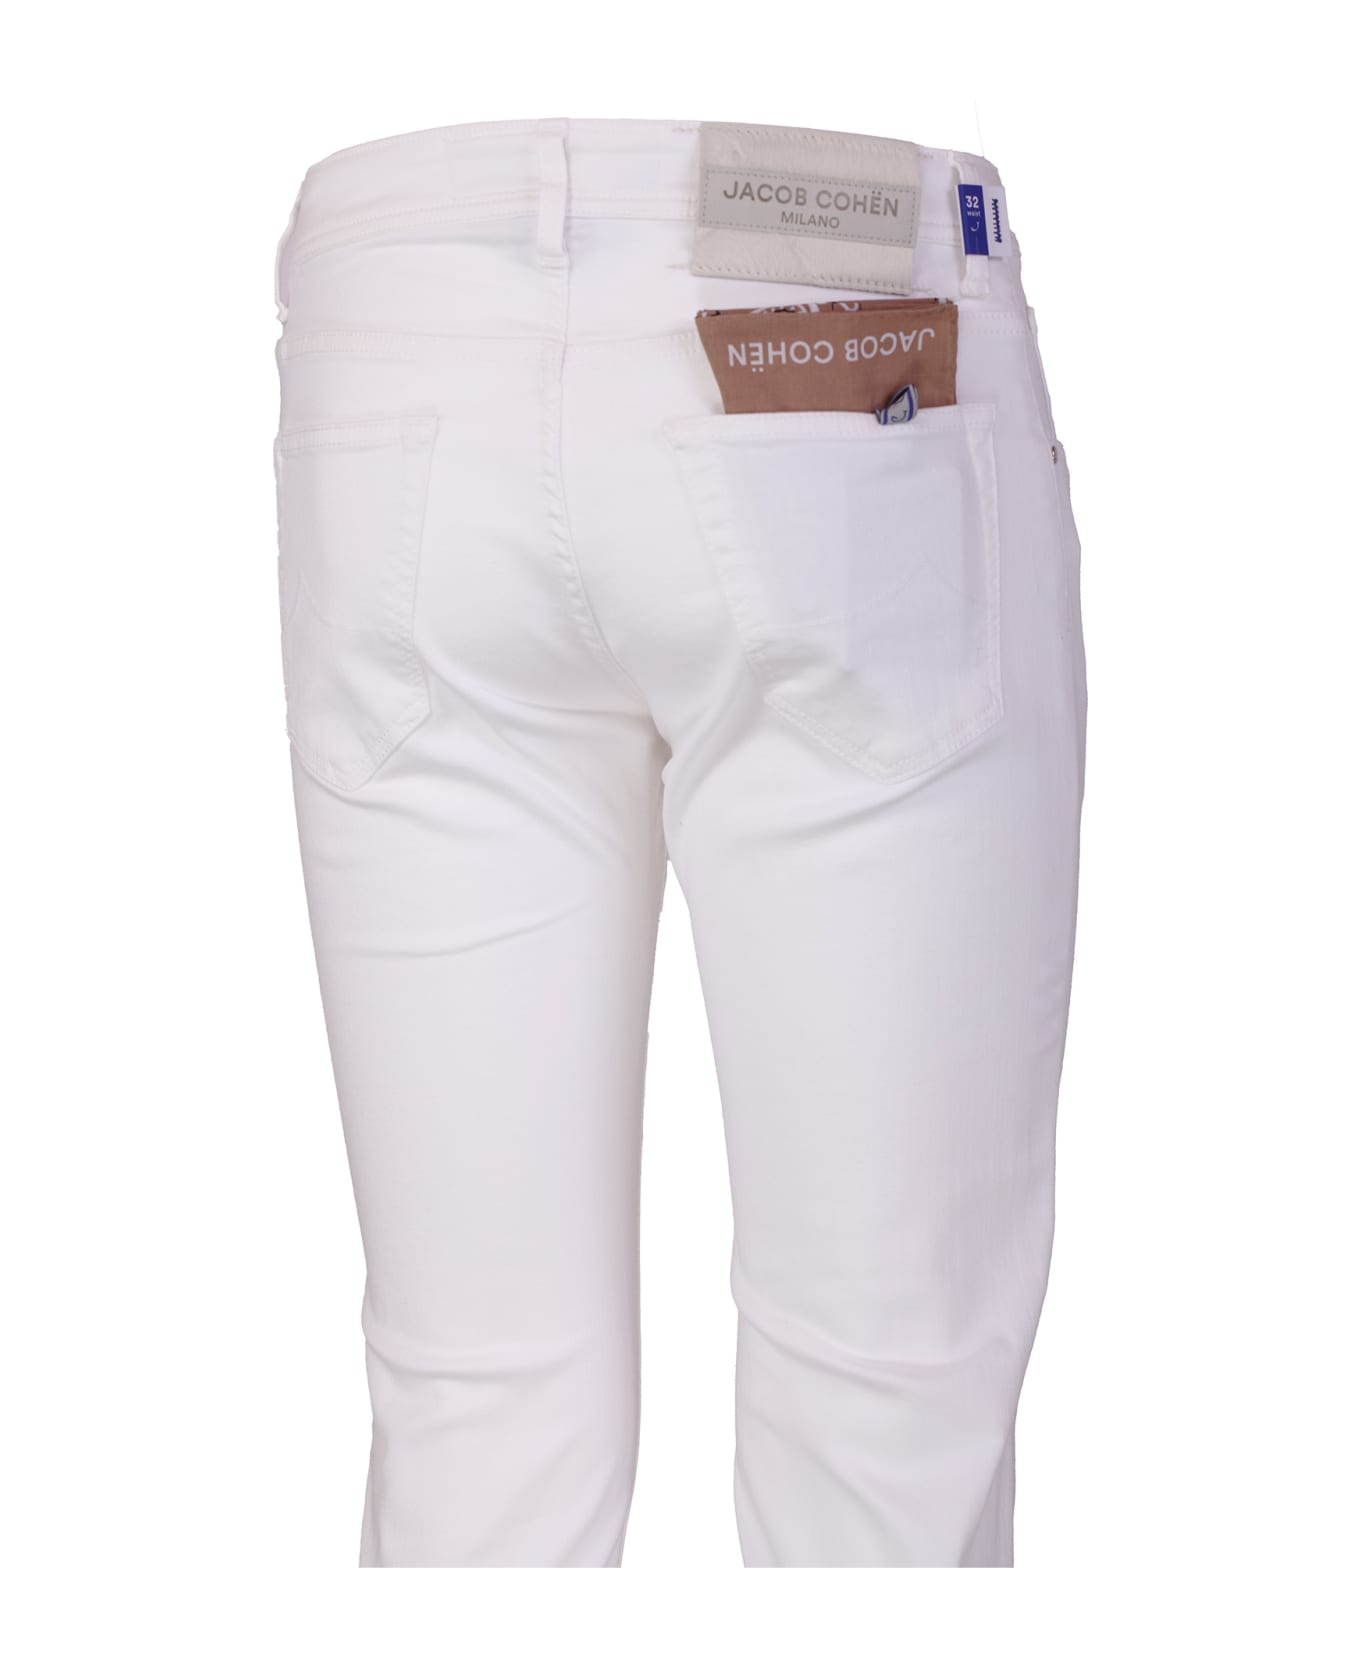 Jacob Cohen Jeans White - White